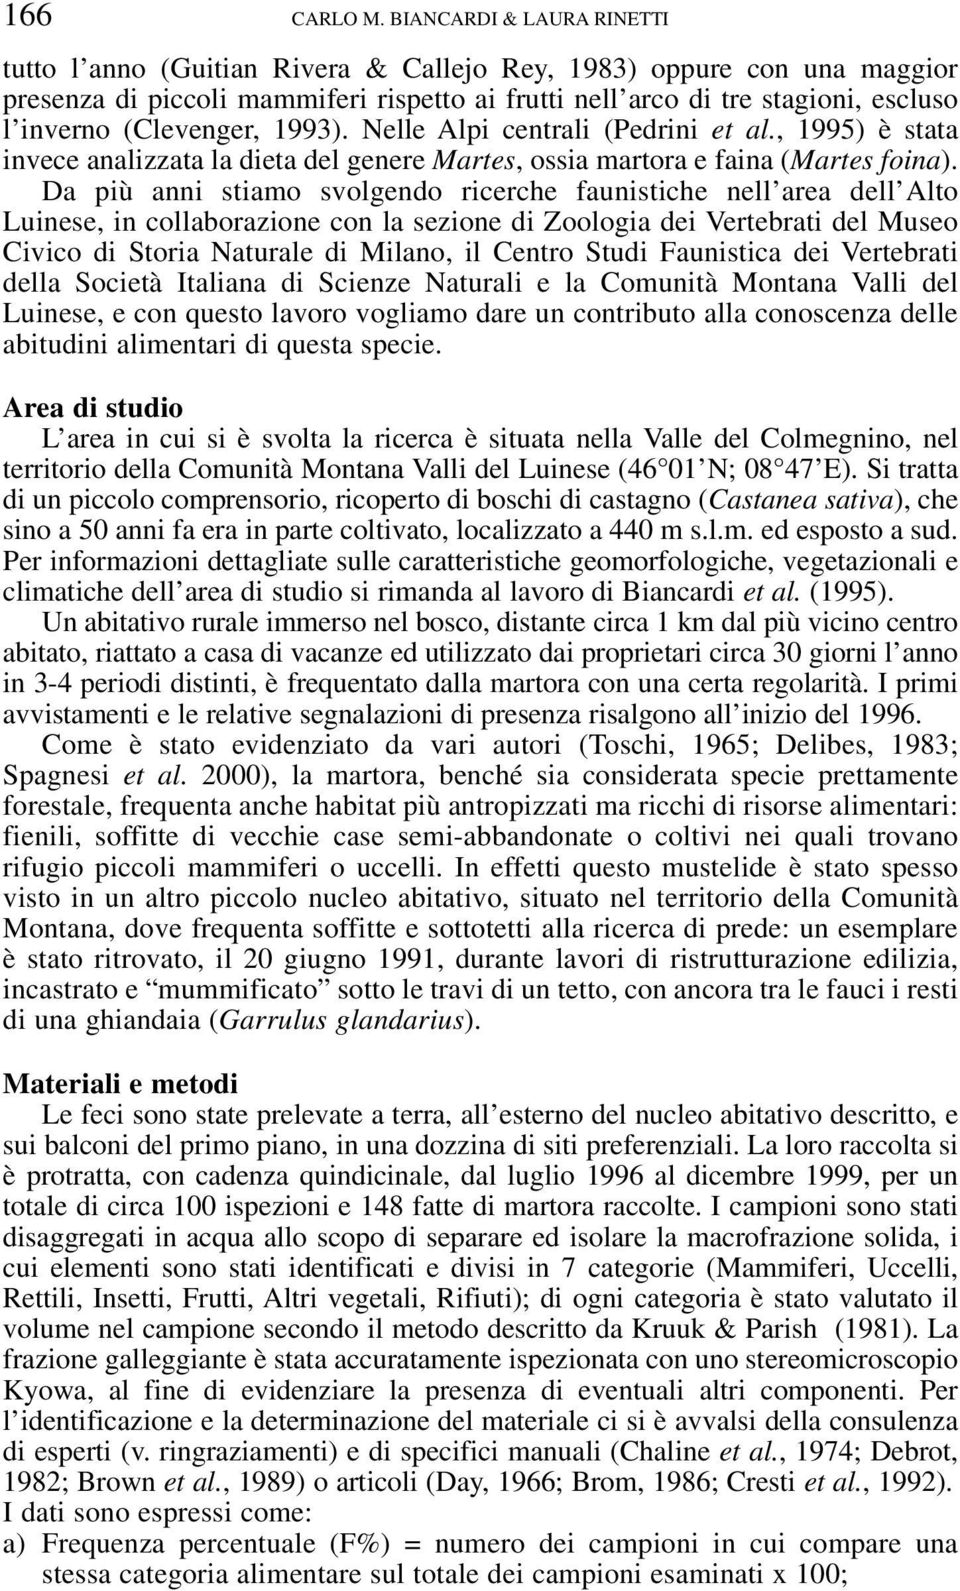 (Clevenger, 1993). Nelle Alpi centrali (Pedrini et al., 1995) è stata invece analizzata la dieta del genere Martes, ossia martora e faina (Martes foina).